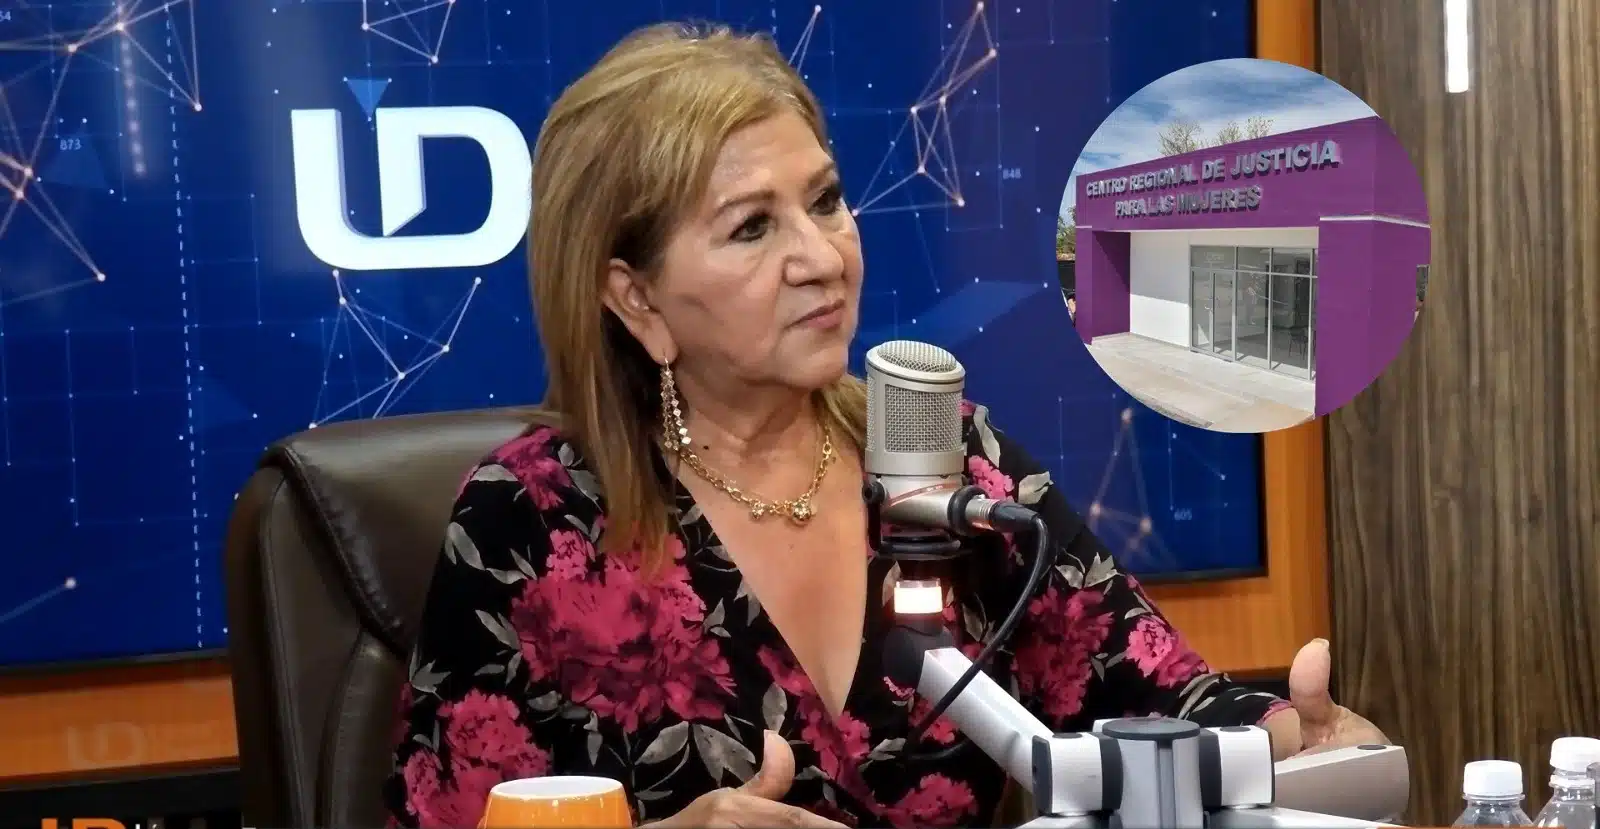 Teresa Guerra Ochoa, titular de Semujeres